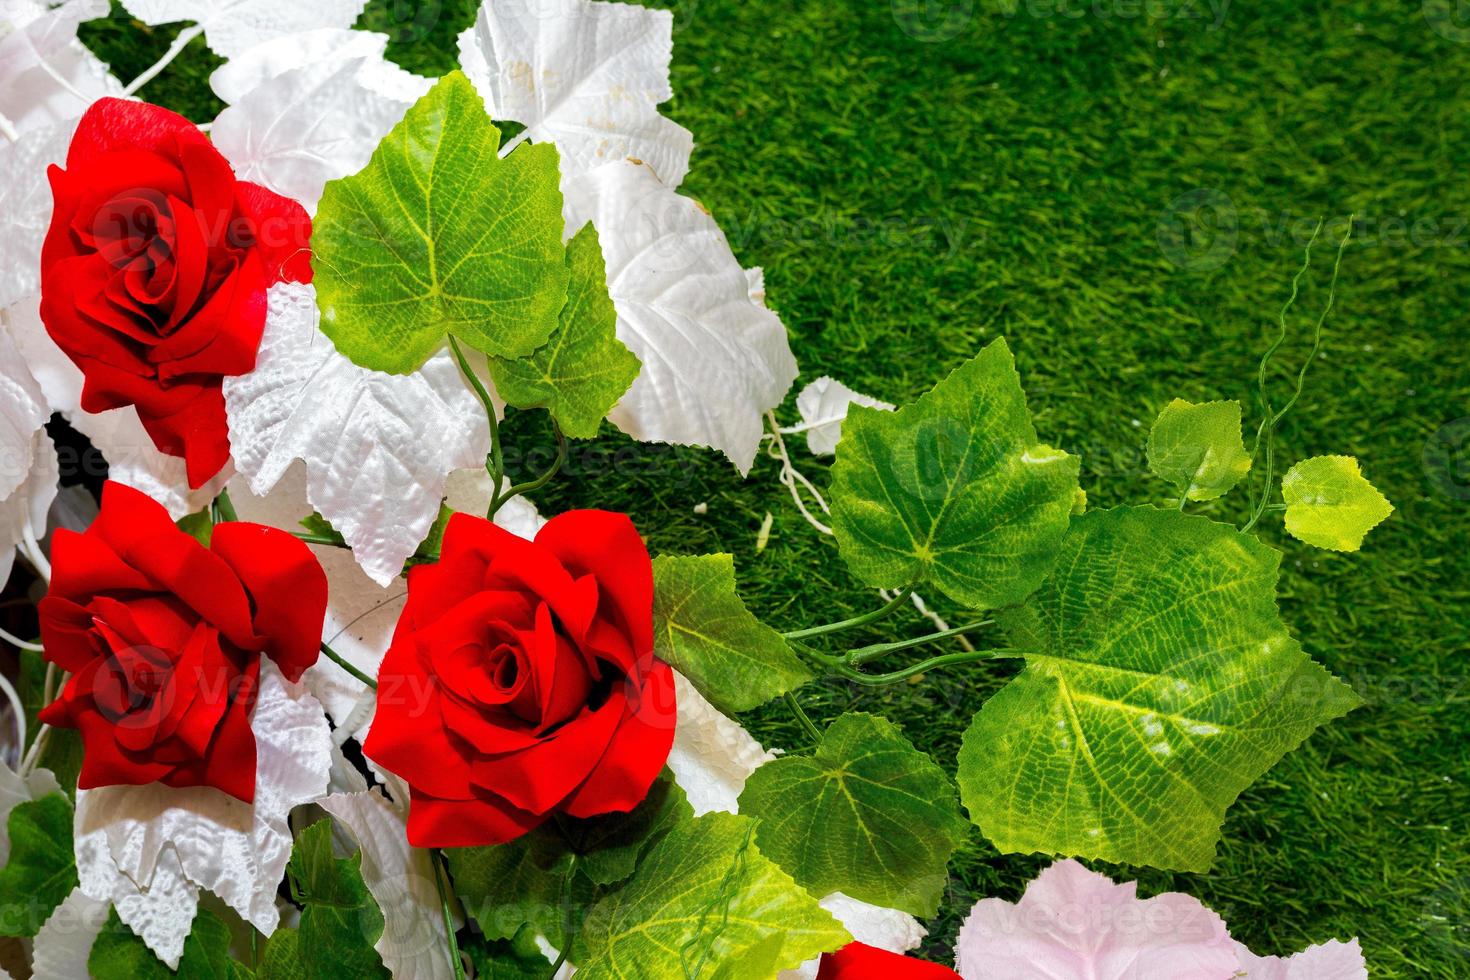 vermelho, verde, e branco flor fundo. plástico artificial flor. plástico colorida decorativo folhas. foto